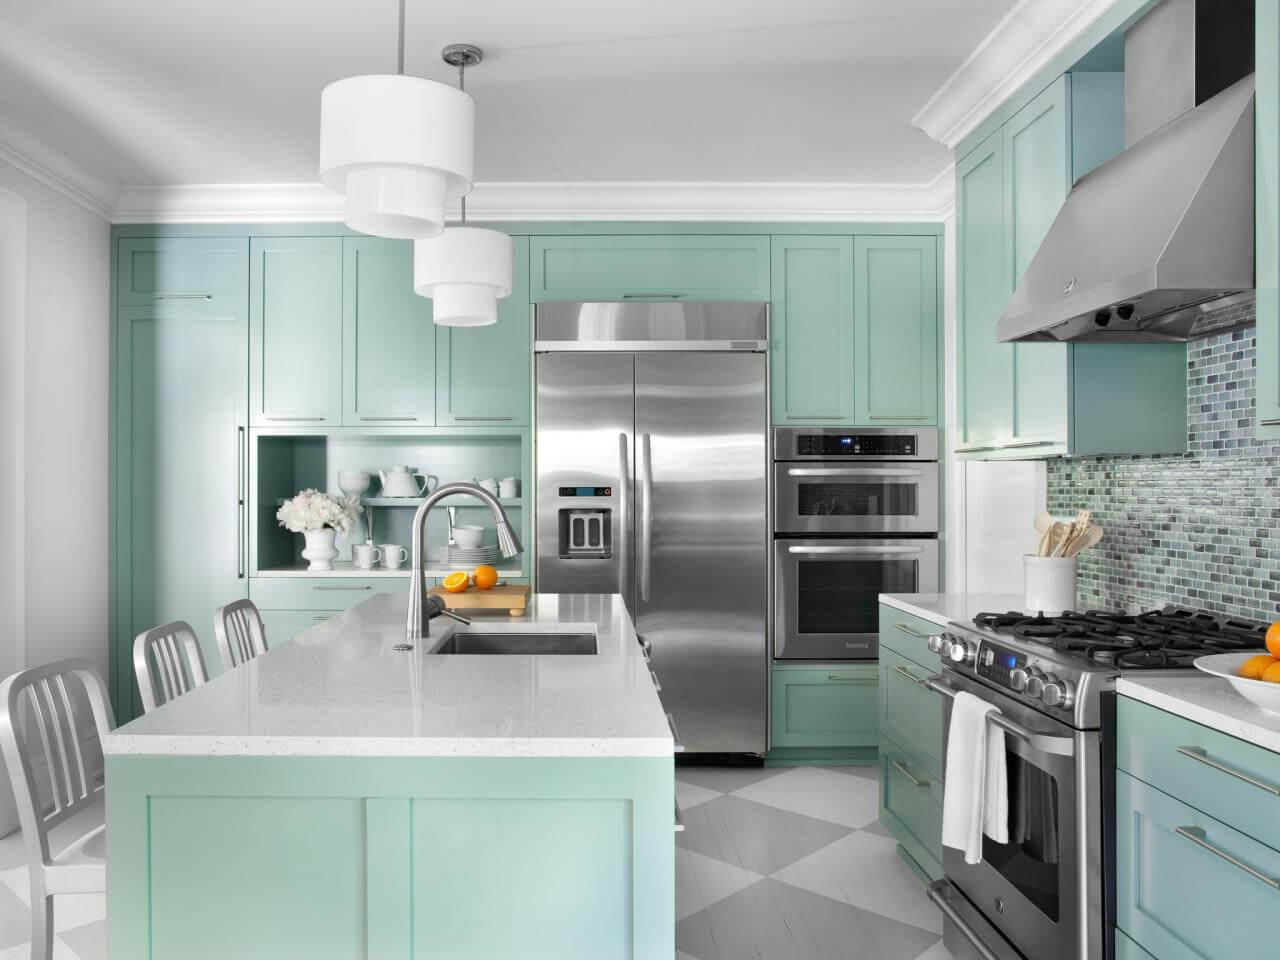 Pleasant kitchen cabinet color